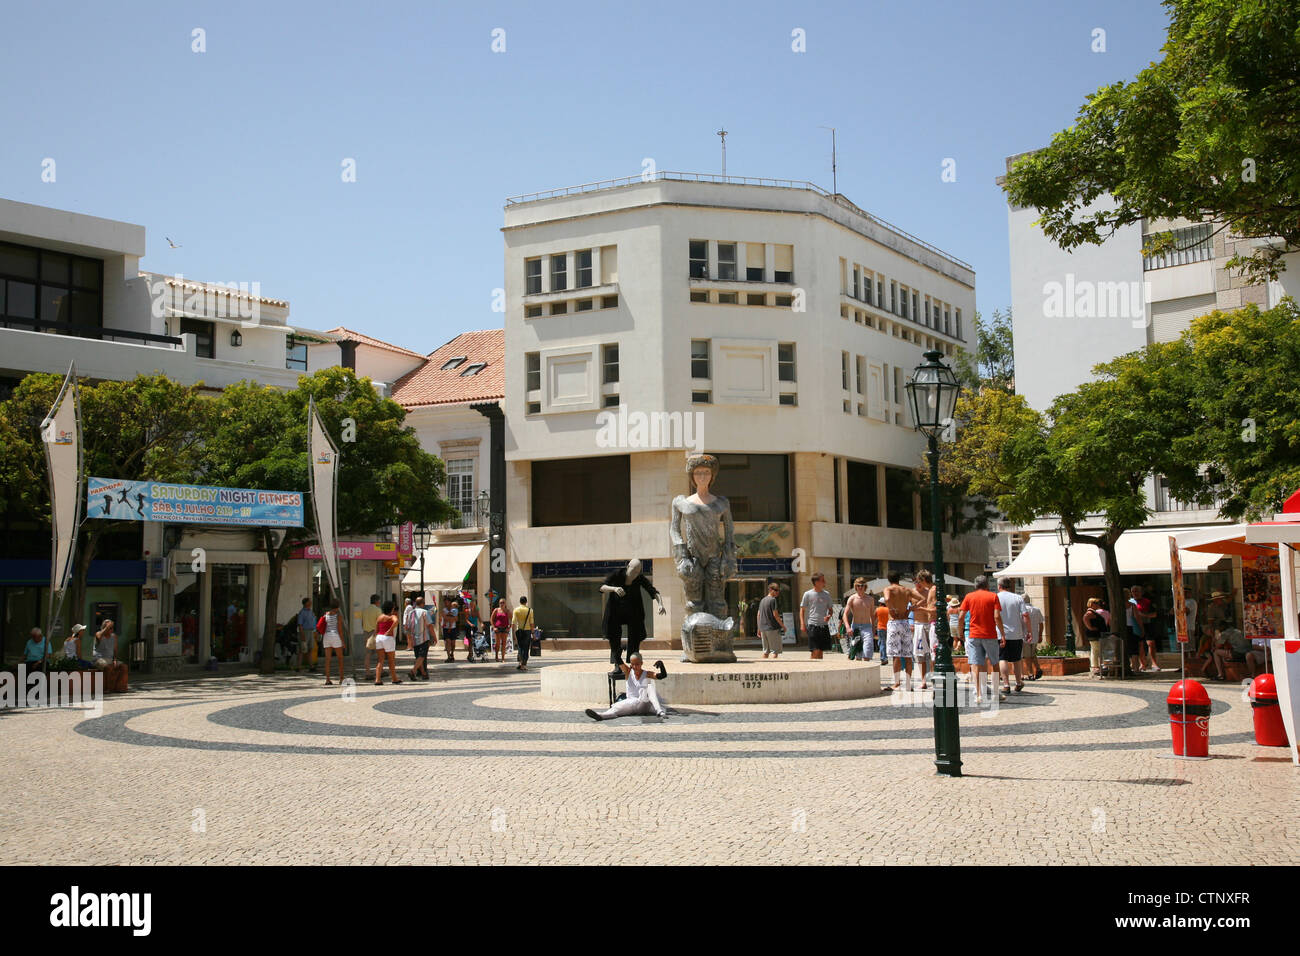 Praca da Gil Eanes in Lagos, Algarve - Portugal Stock Photo